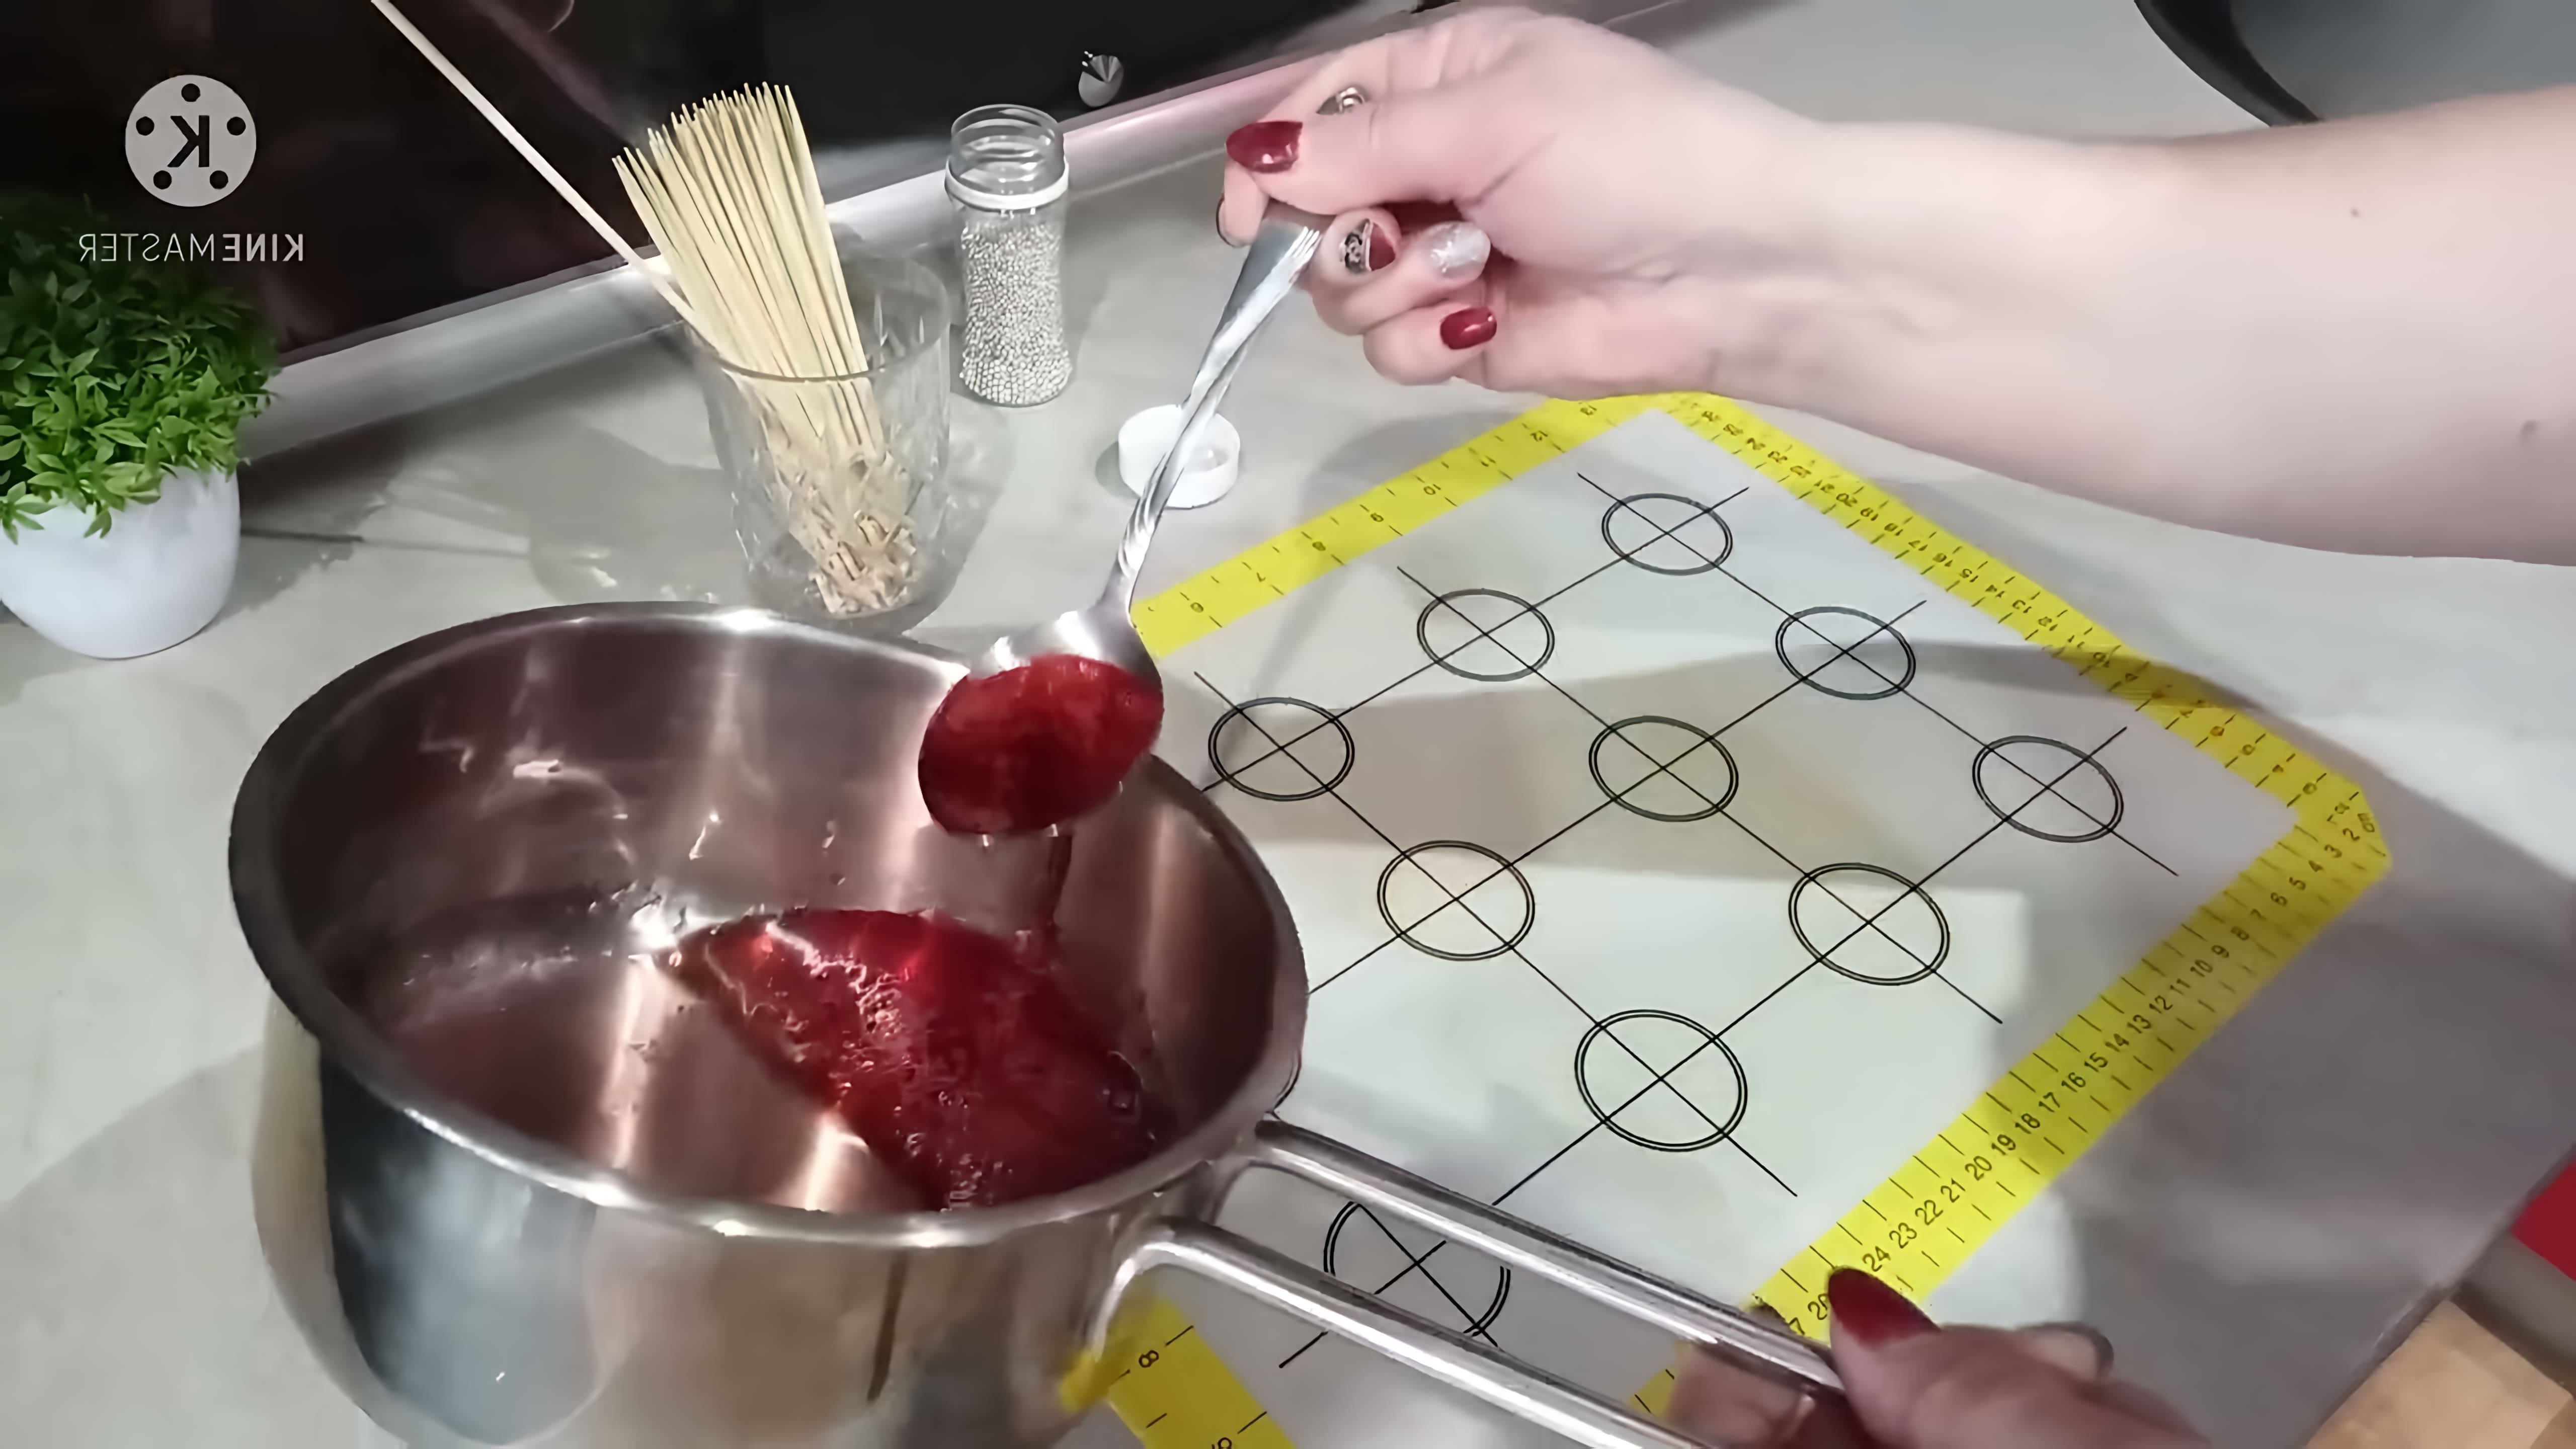 В этом видео демонстрируется процесс приготовления леденцов из глюкозного сиропа и сахара для украшения детского торта